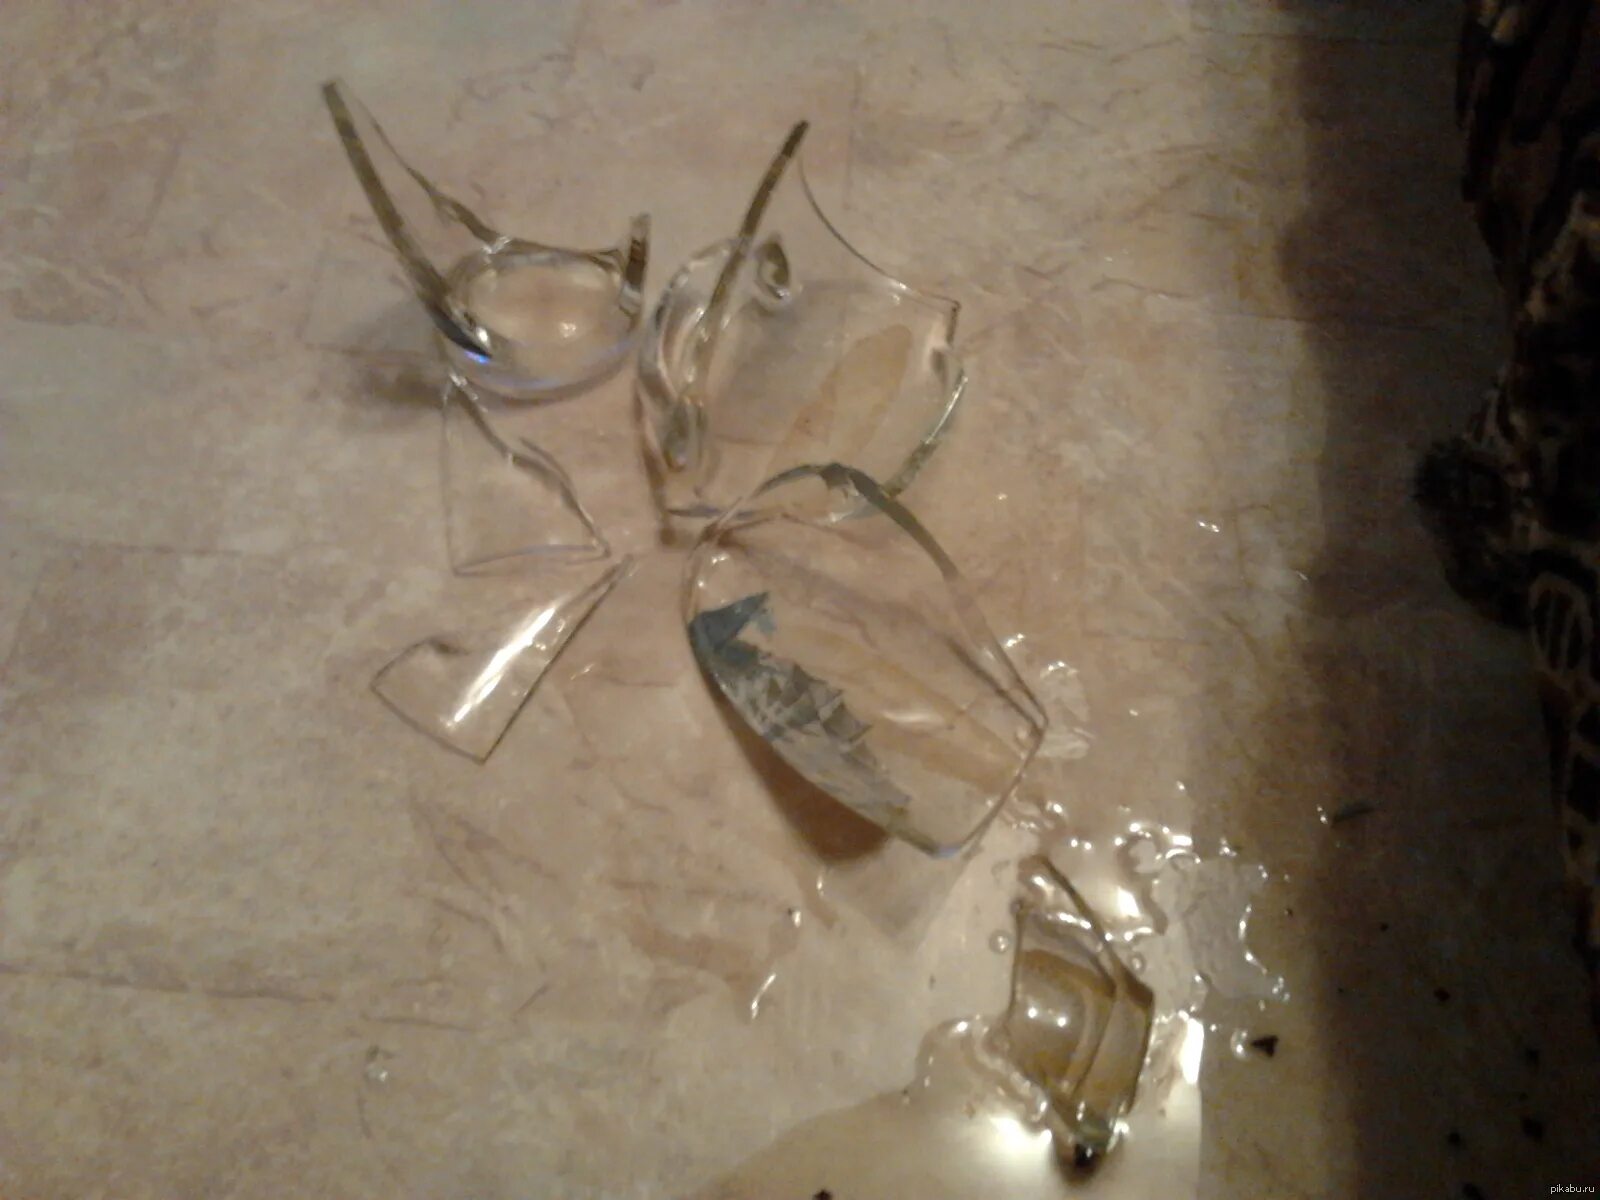 Разбилась стеклянный стакан. Разбитая стеклянная посуда. Разбитый стакан. Разбитые бокалы. Разбитый стеклянный стакан.